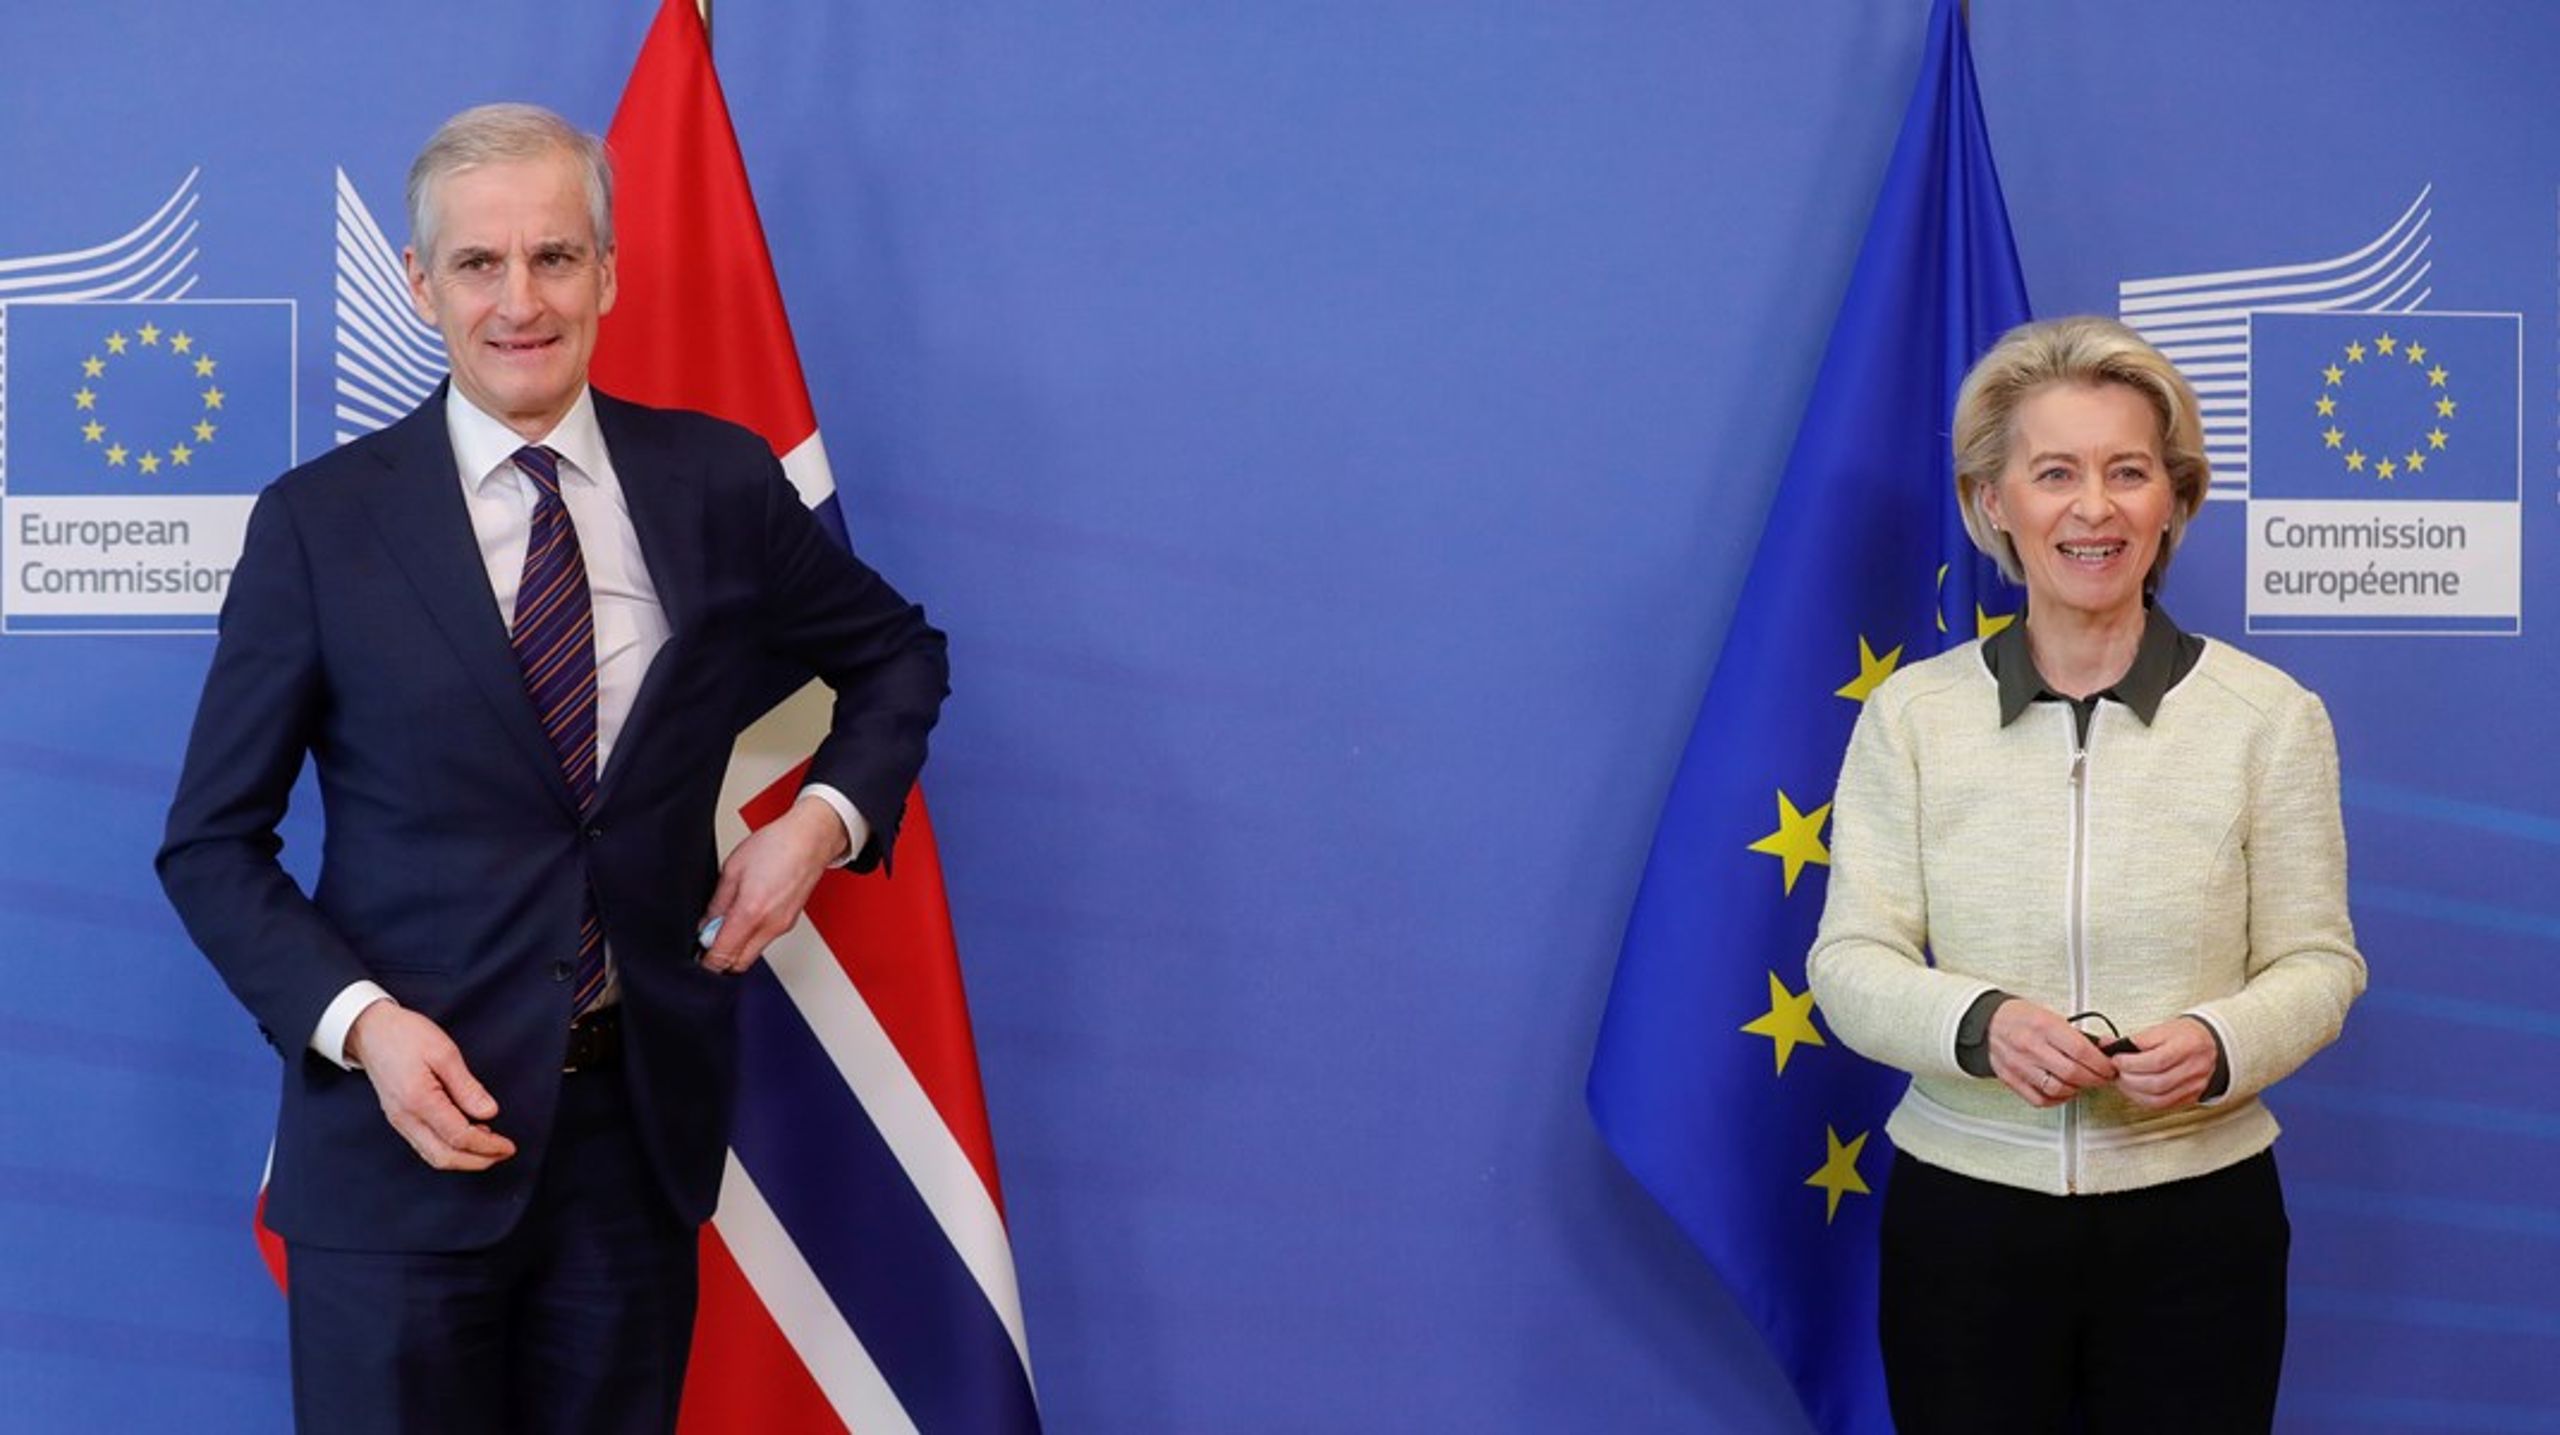 Norges statsminister Jonas Gahr Støre var i Brussel mandag for å møte EU-kommisjonens president Ursula von der Leyen. Sammen&nbsp;signerte de en avtale om en grønn allianse mellom Norge og EU før de reiste videre til Nordsjøtoppmøte i Oostende, Belgia.